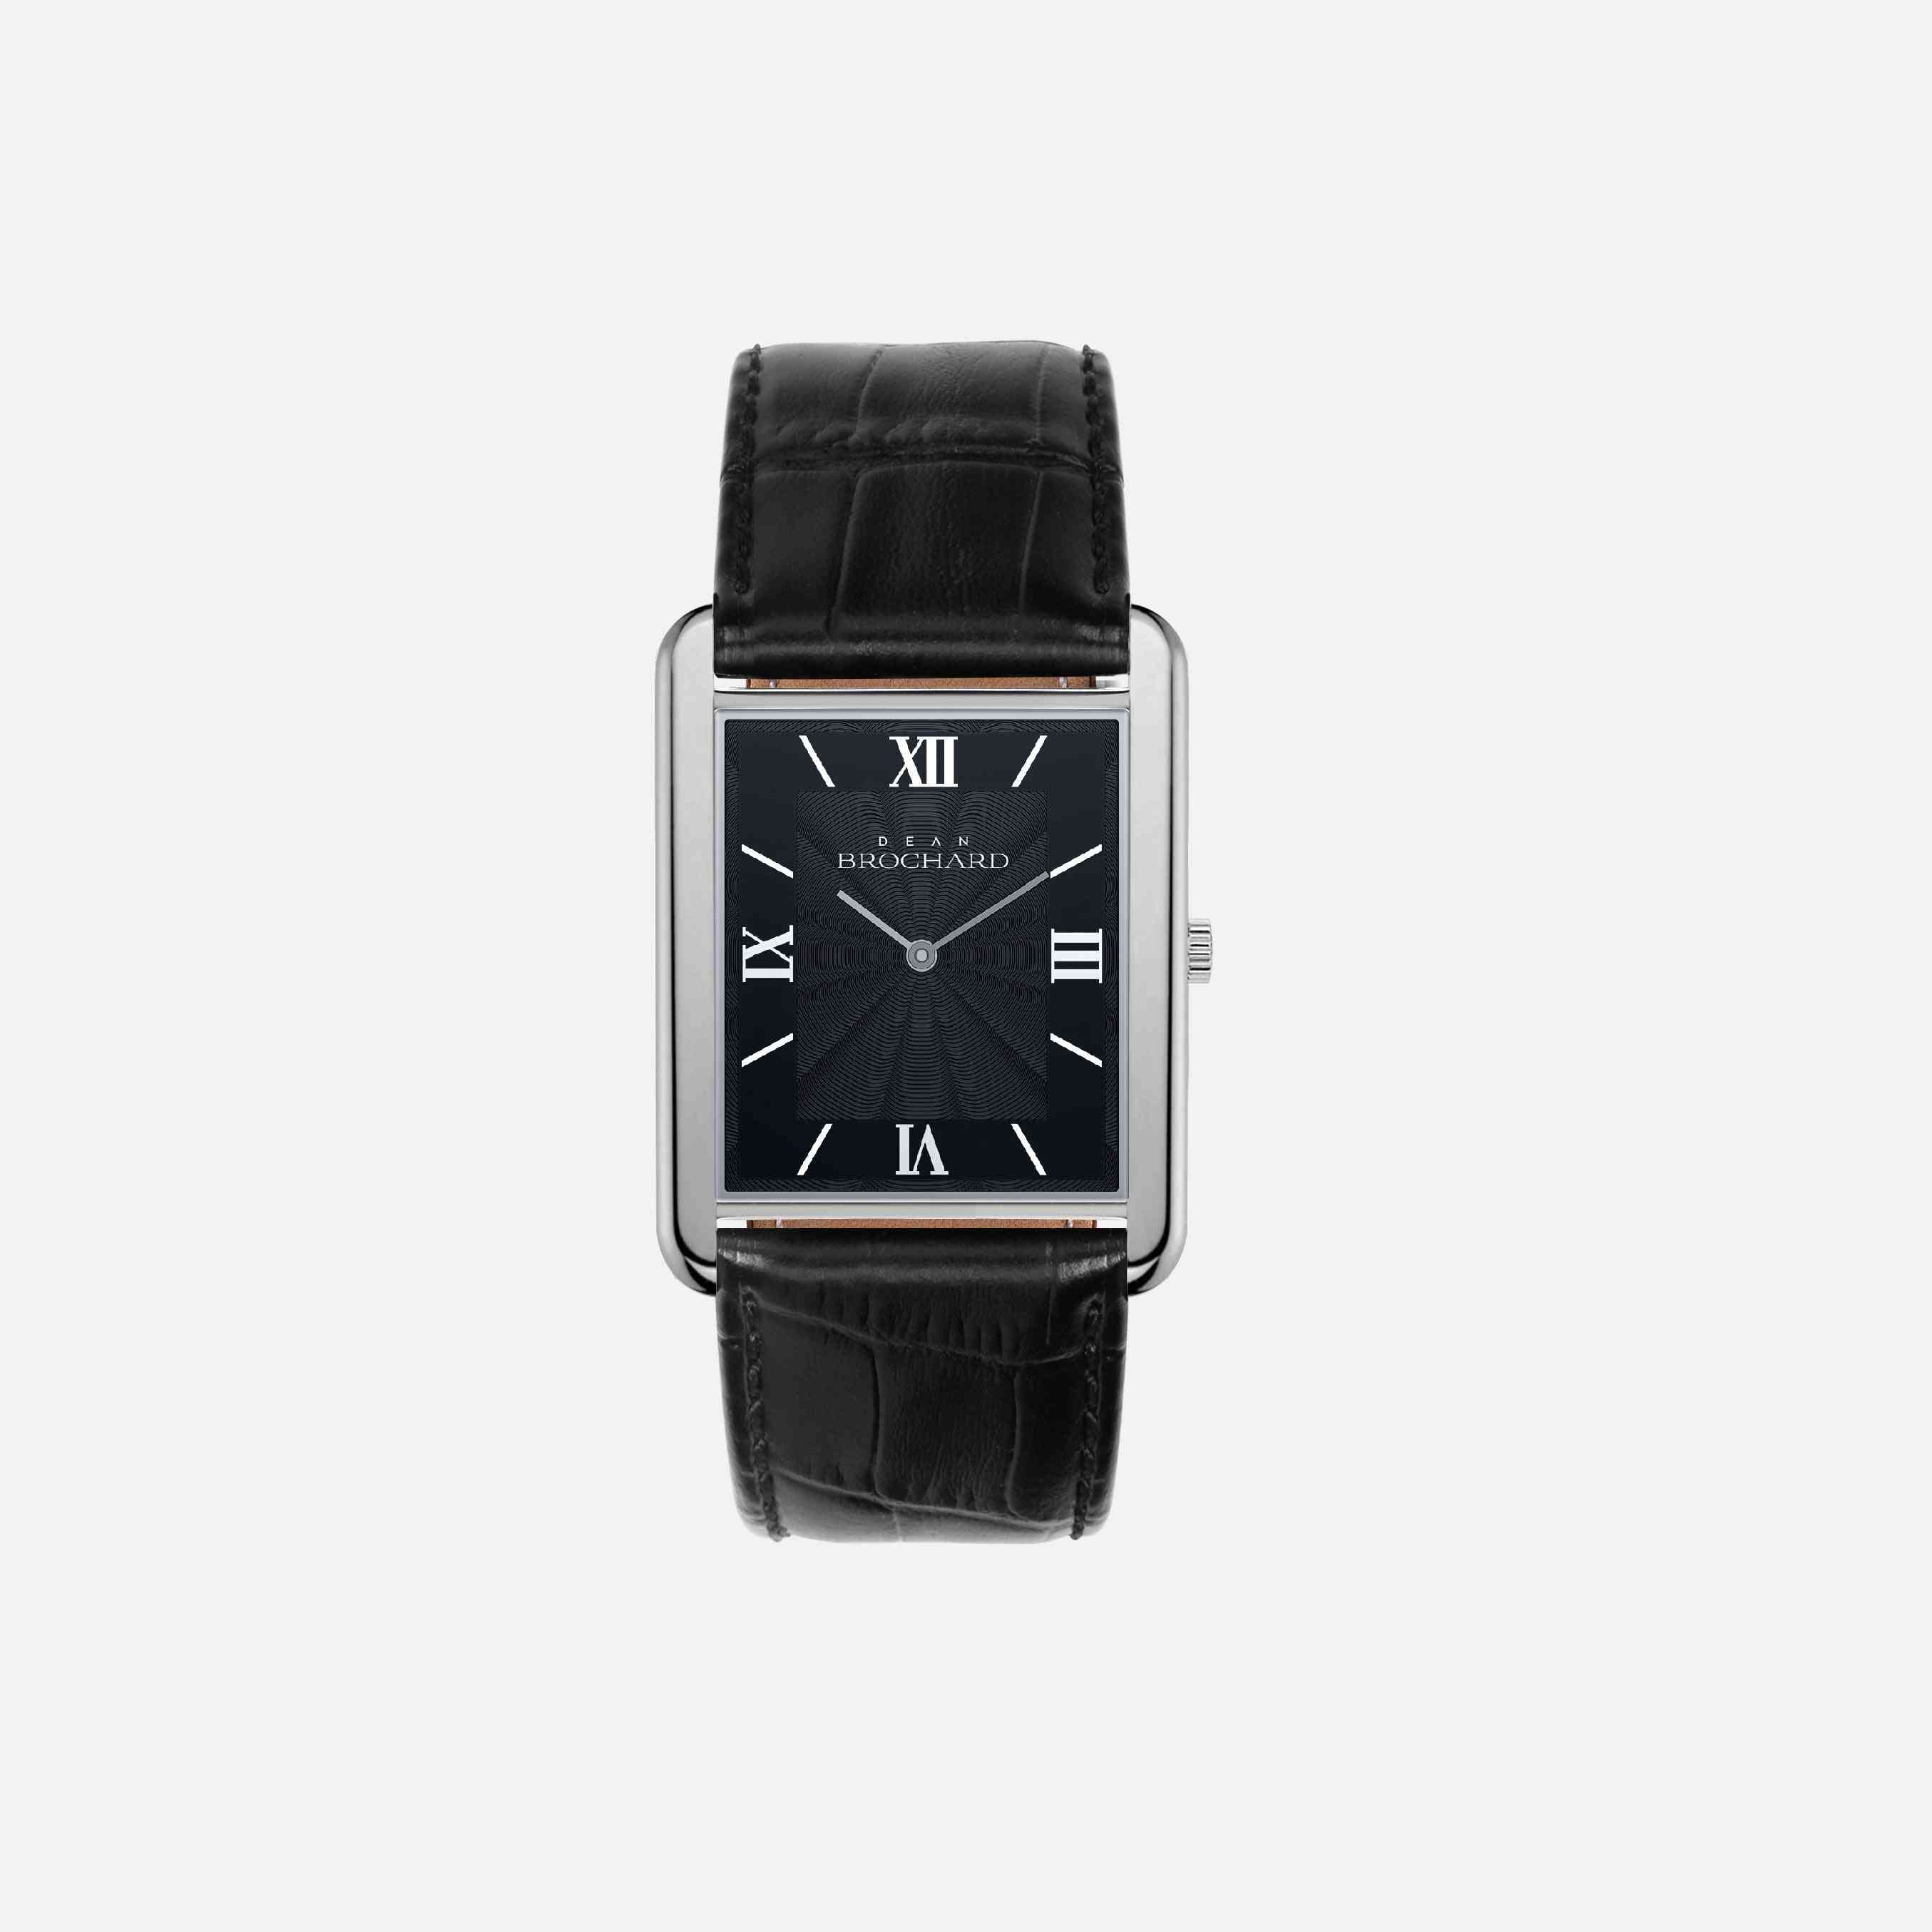 Skórzany pasek minimalistyczny zegarek w kształcie kwadratu z tarczą